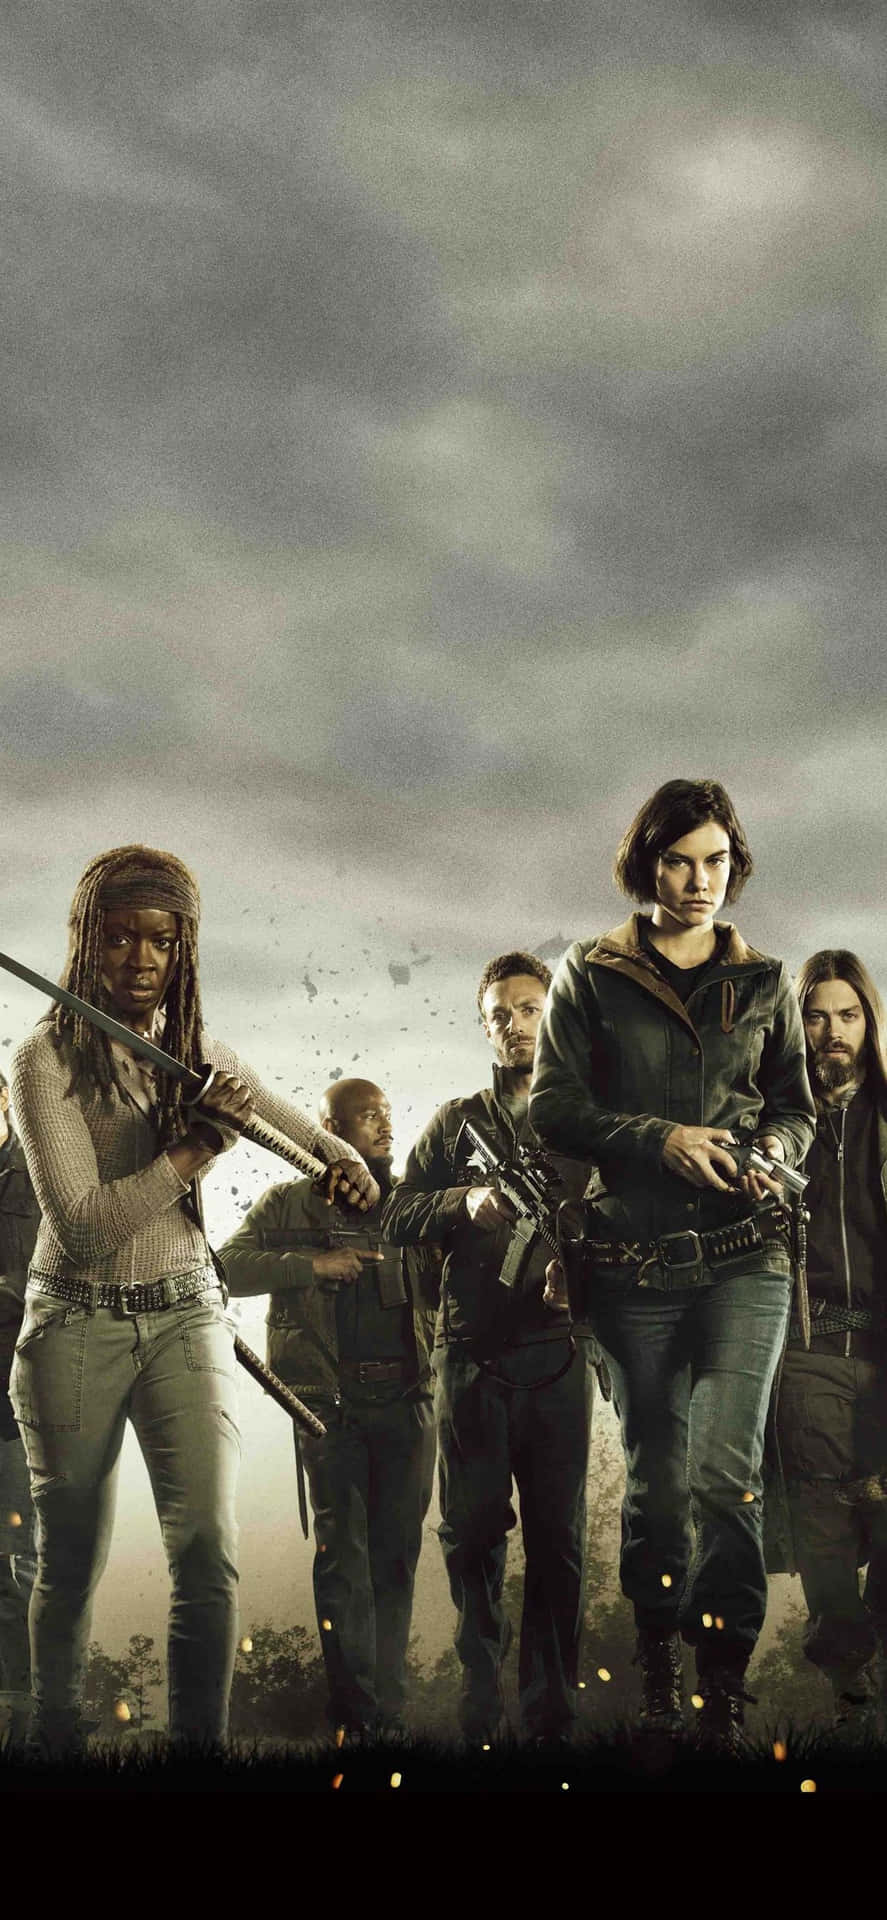 The Walking Dead Season 5 Poster Wallpaper